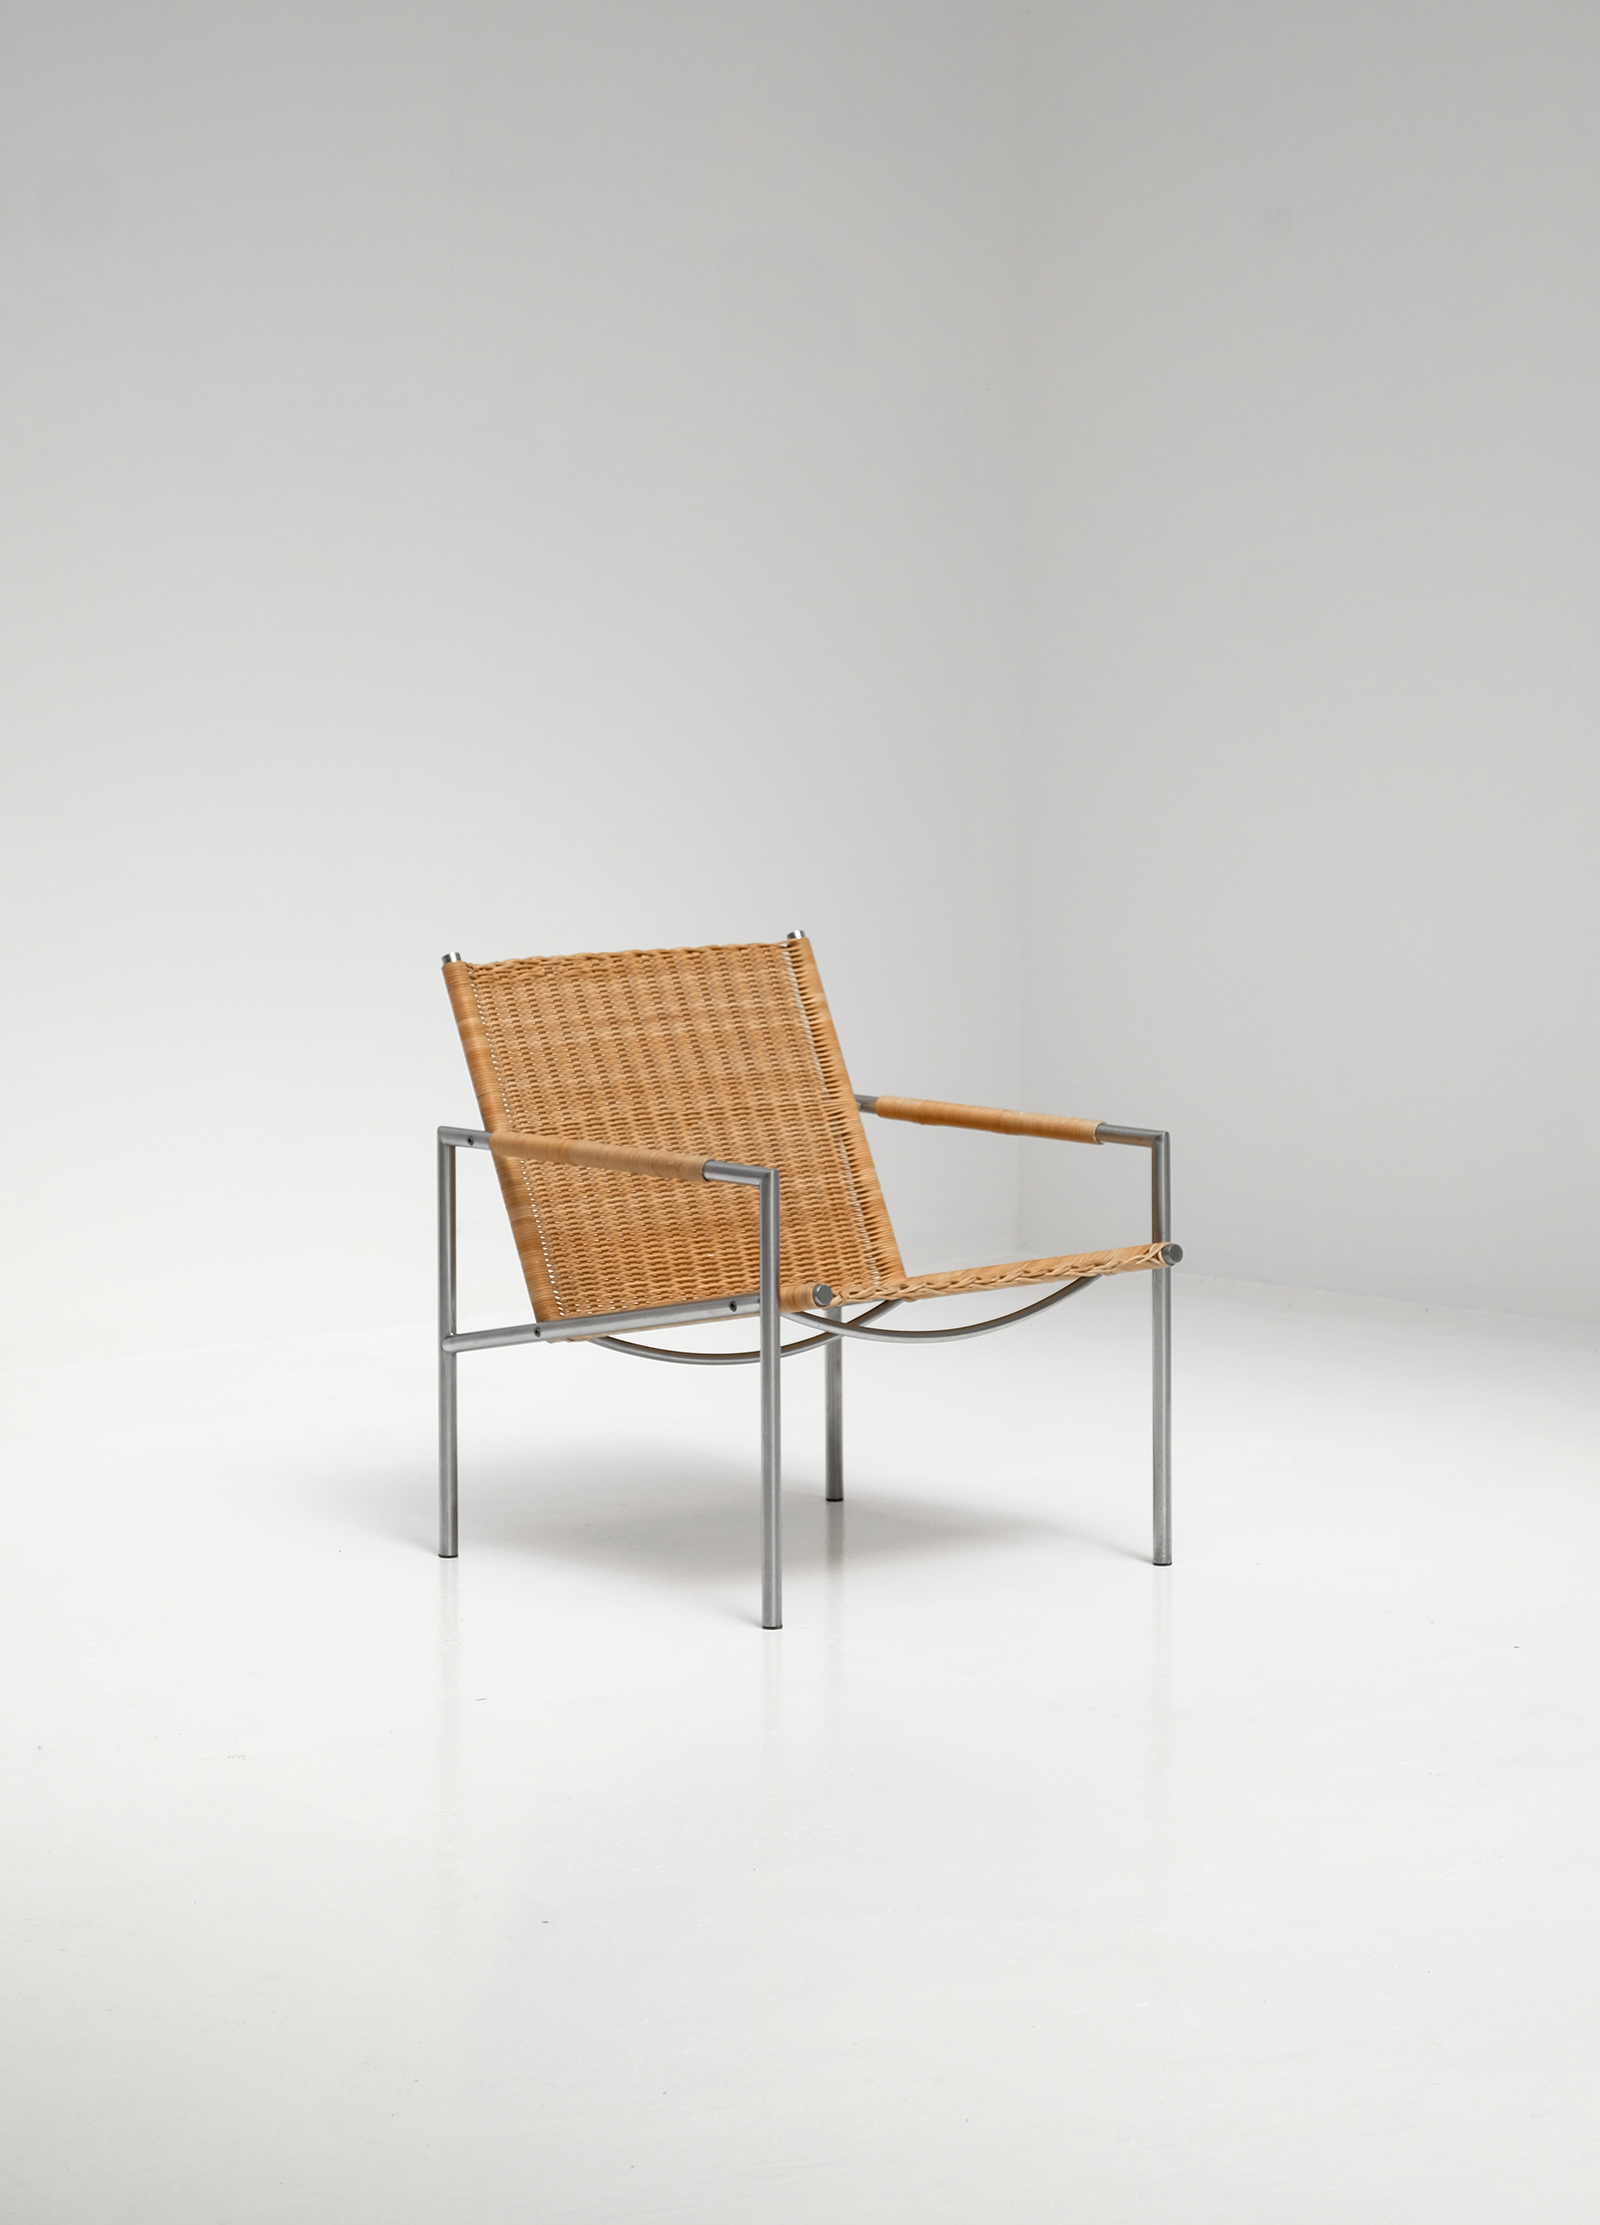 Martin Visser sz01 Lounge chairimage 1